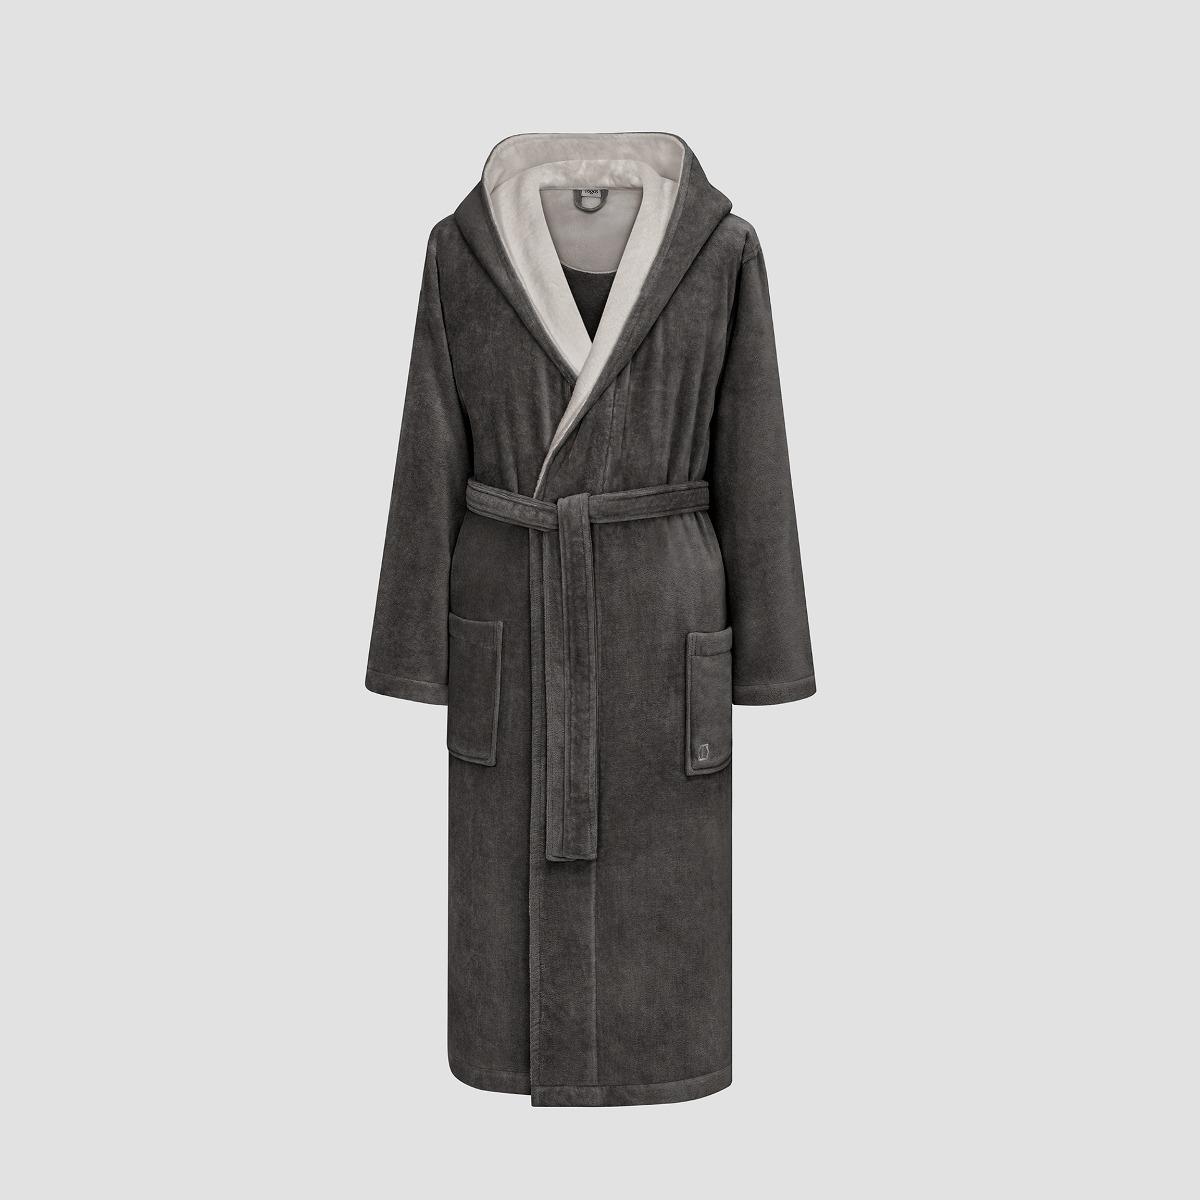 Халат Togas Арт Лайн тёмно-серый 3XL(56) халат togas арт лайн коричневый с бежевым 2xl 54